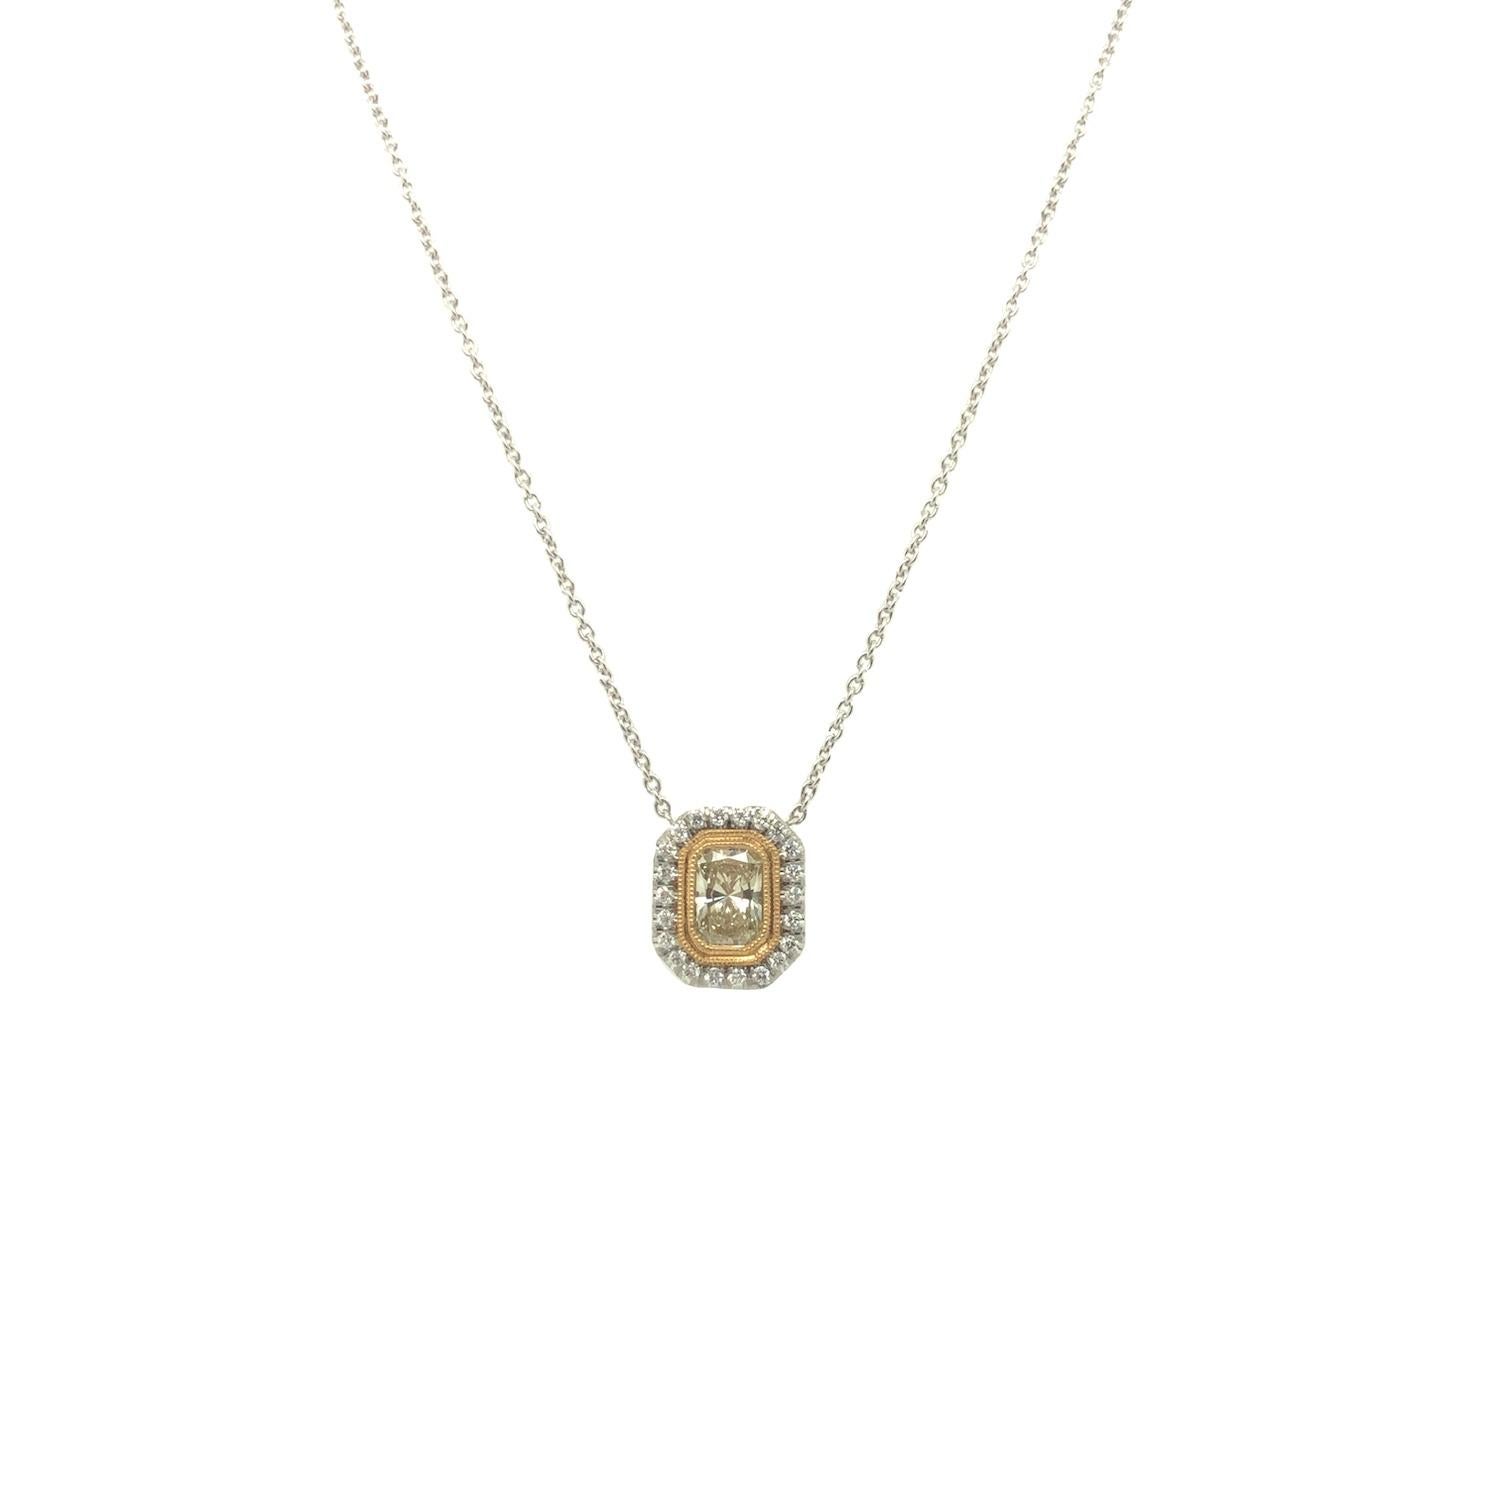 Exquisite Handwerkskunst von unserem Meister Juwelier bei Gems Are Forever, ist dieses Rechteck geformt gelben Diamanten mit VS Klarheit mit einem Gewicht von 0,81 Karat mit feinen 18K Gelbgold milgrain umgeben. Ein Halo aus farblosen Diamanten mit